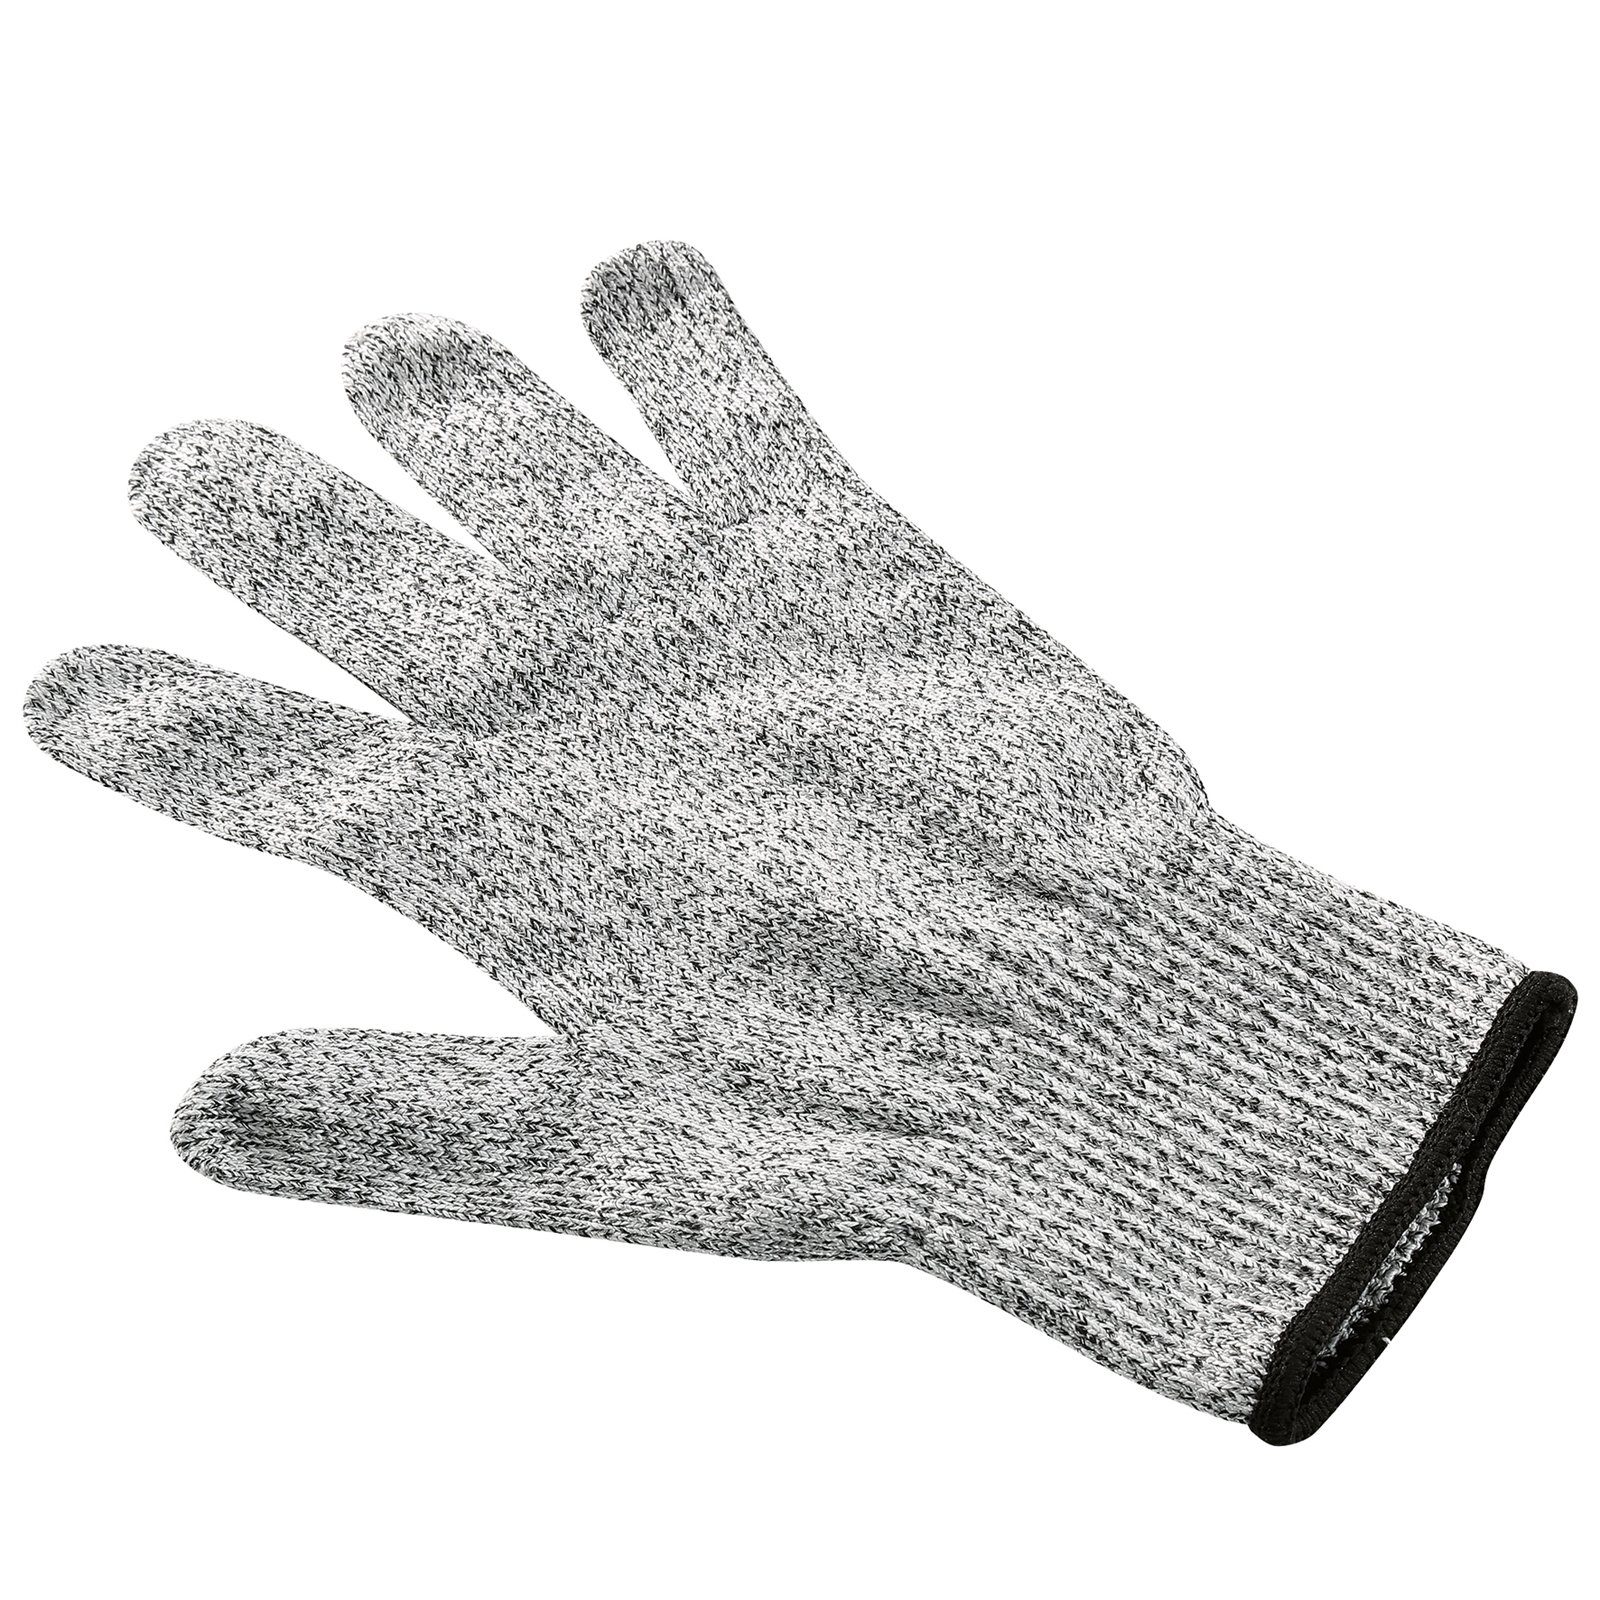 Küchenprofi Schnittschutzhandschuhe Schnittschutz Handschuh Safety